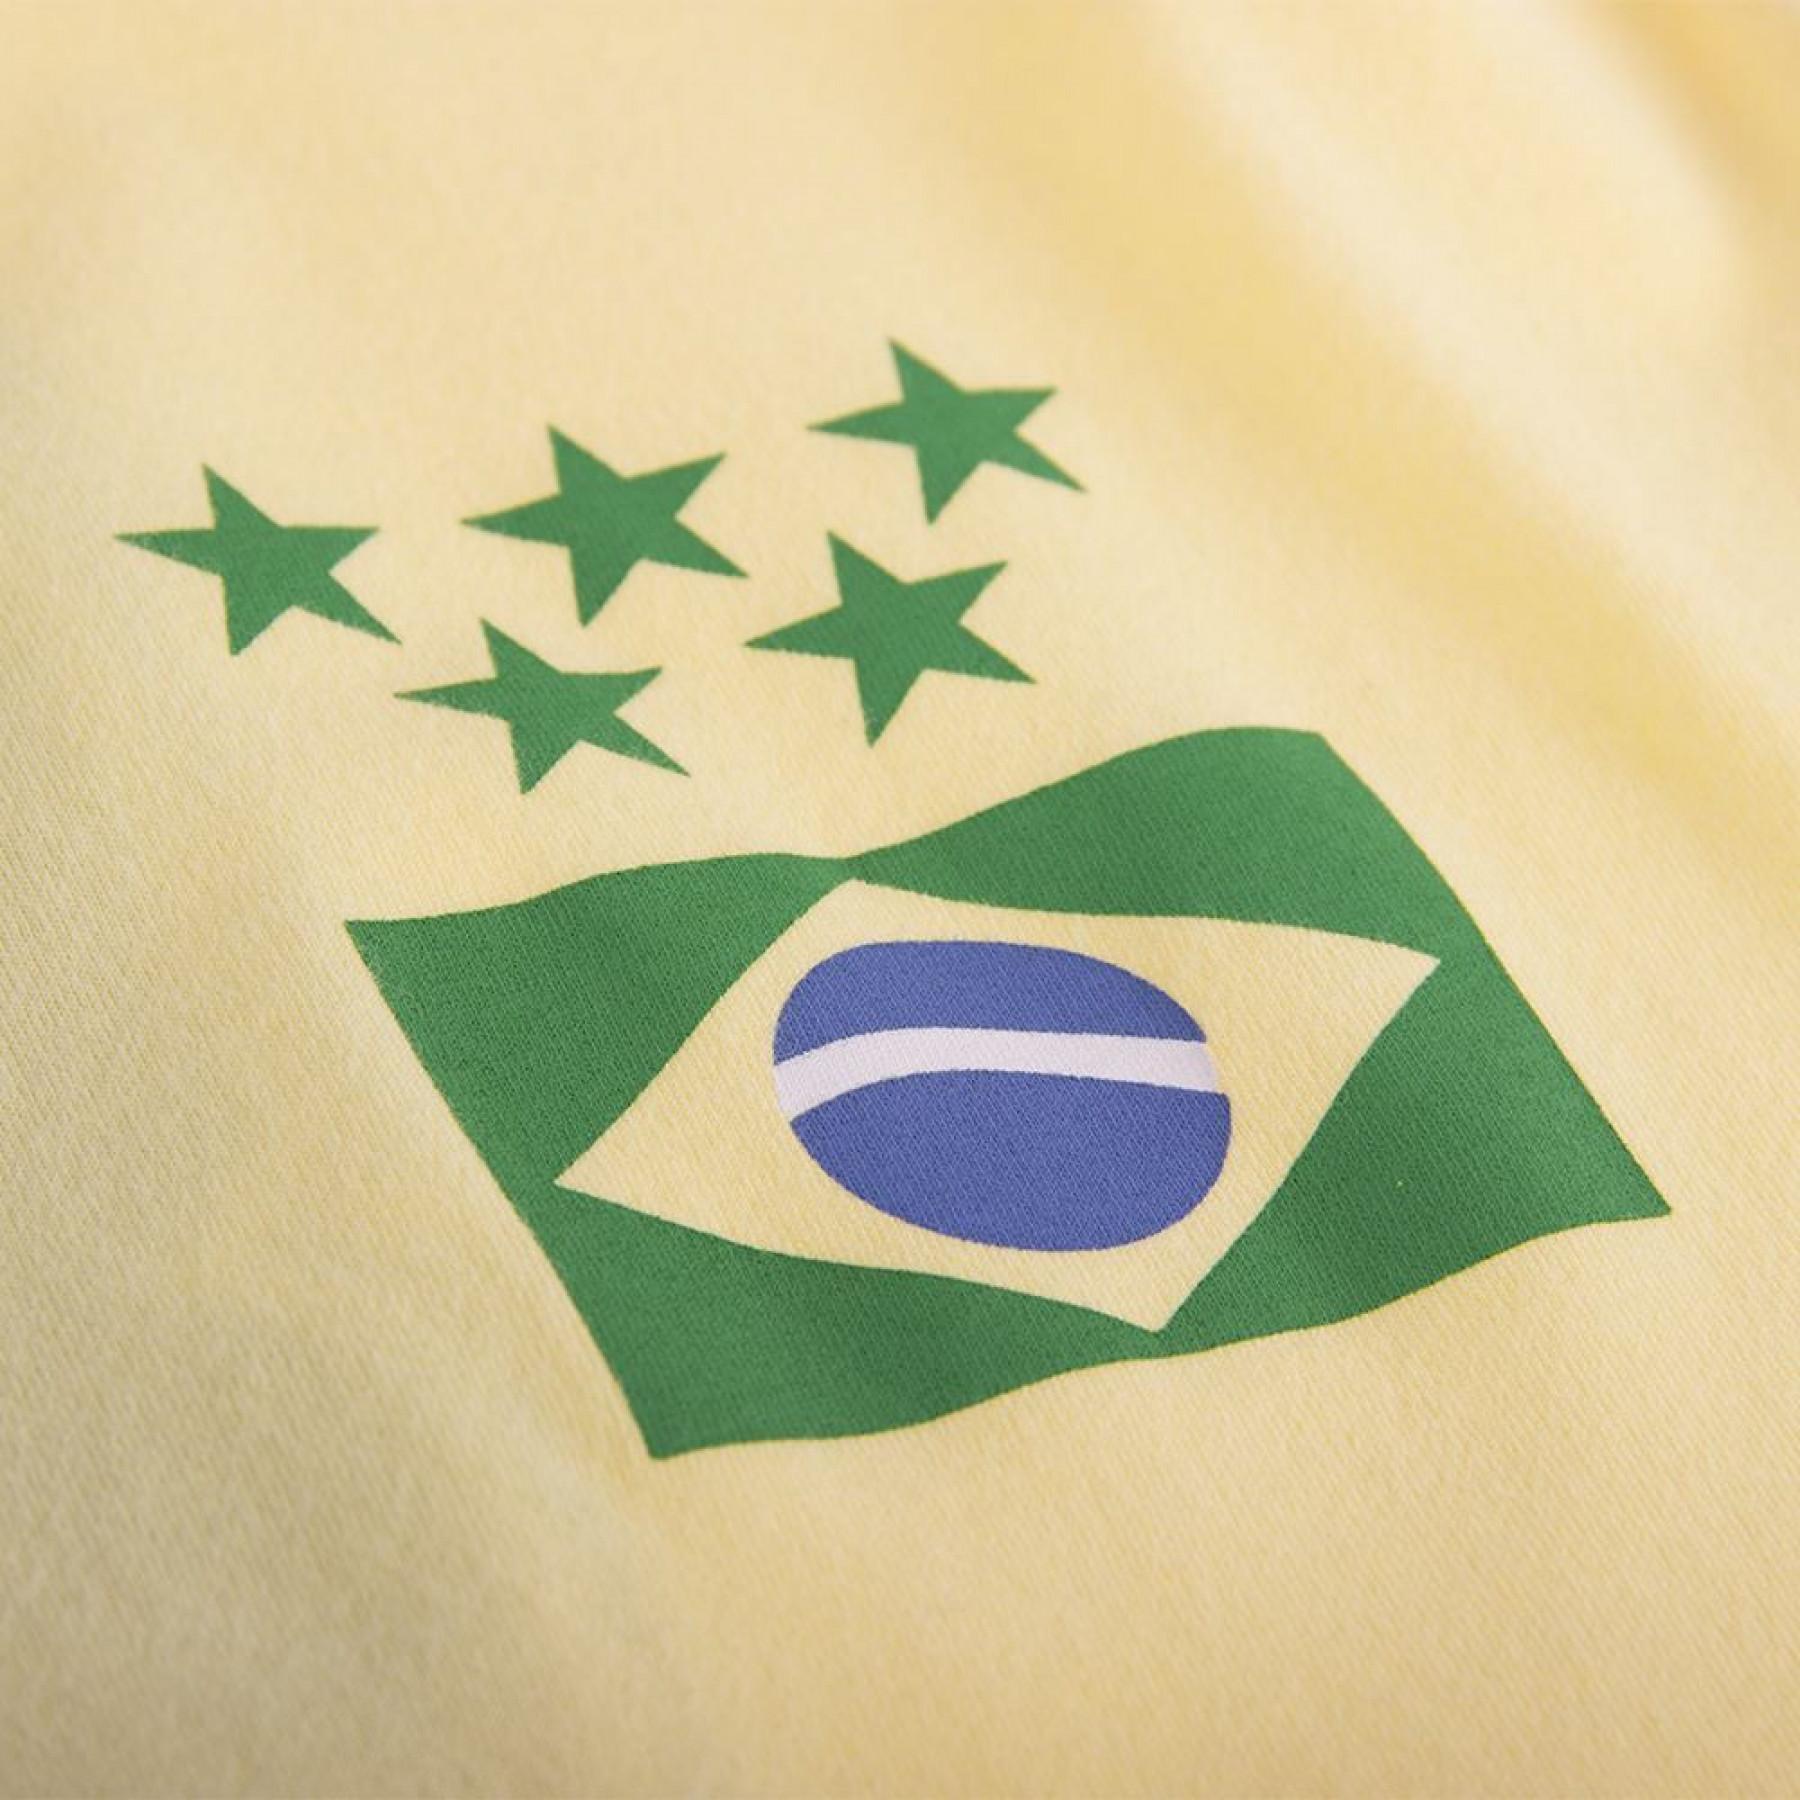 T-shirt do capitão Brésil